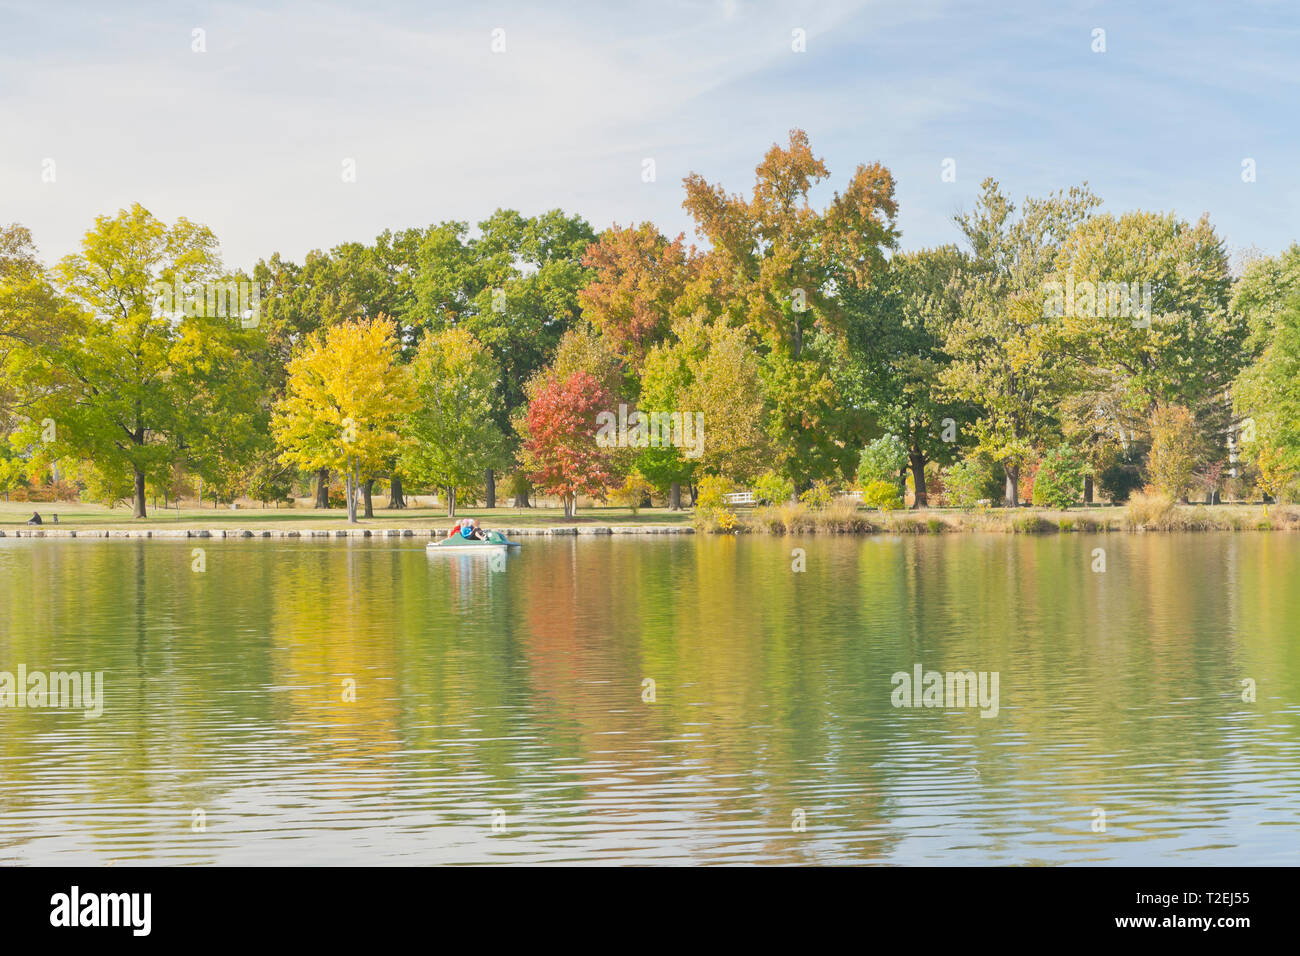 Una struttura ad albero sweetgum spicca sopra gli alberi con fogliame di autunno come quattro donne godetevi un giro in pedalò nel lago Post-Dispatch a St Louis Forest Park. Foto Stock